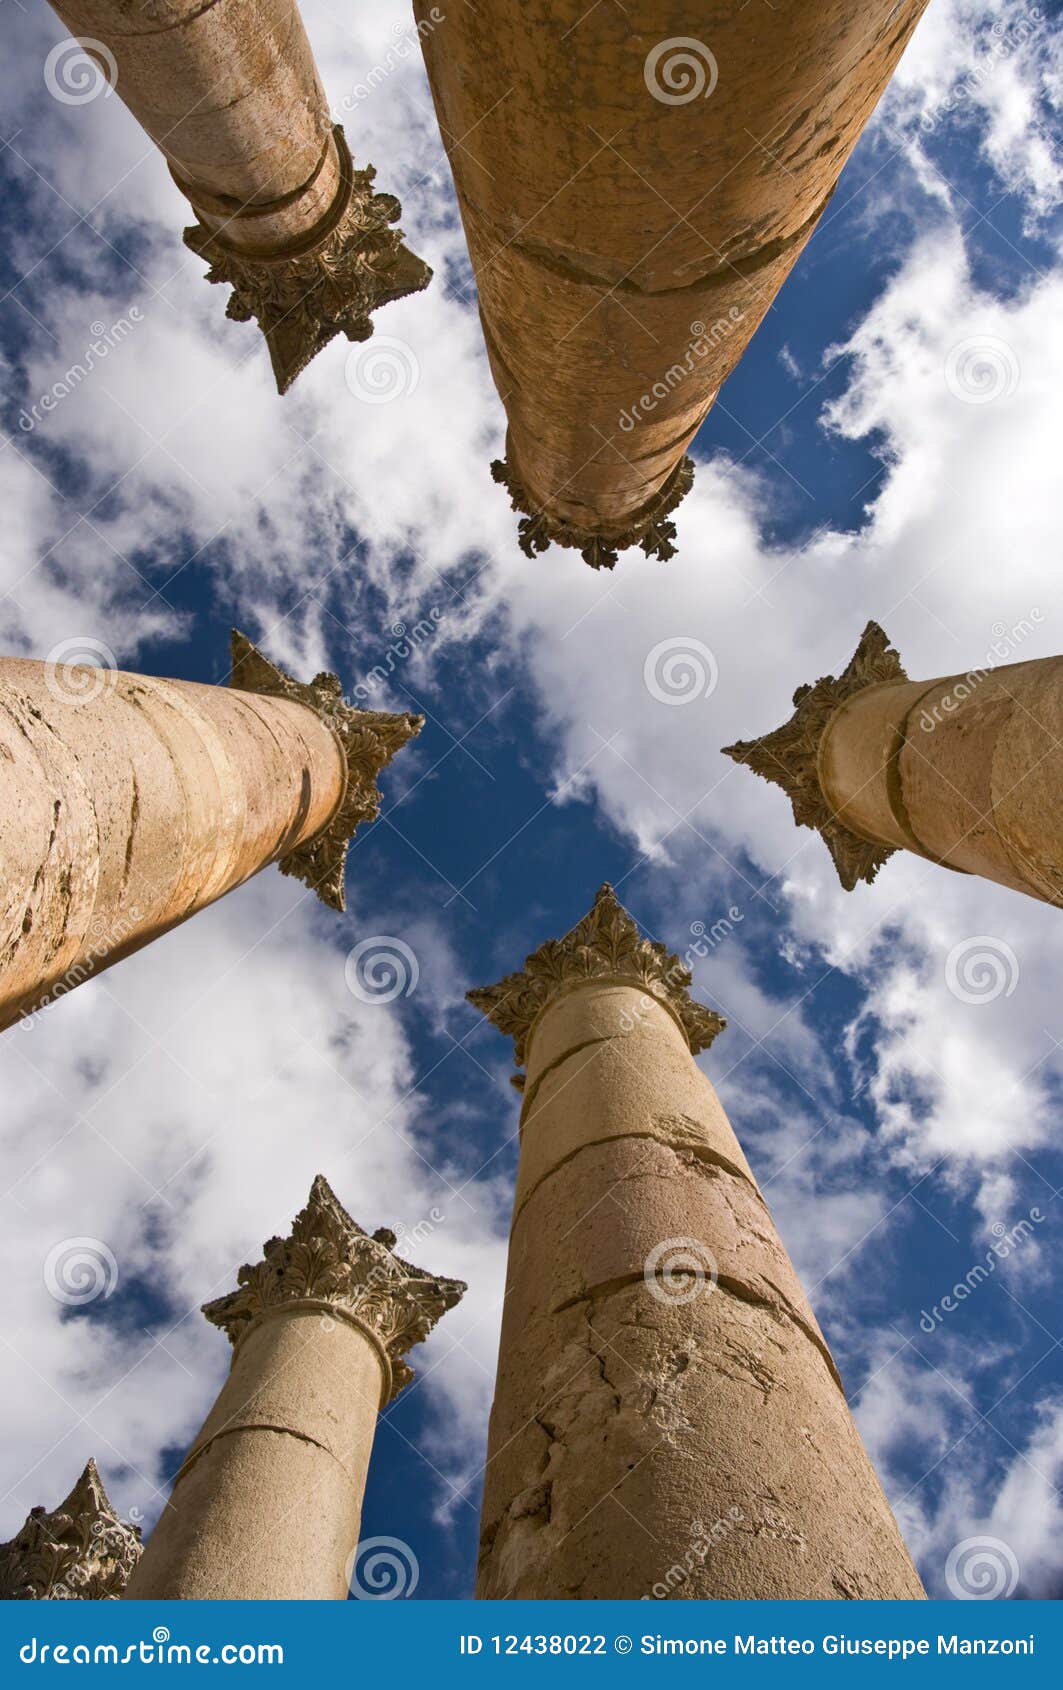 temple of artemis in jerash, jordan